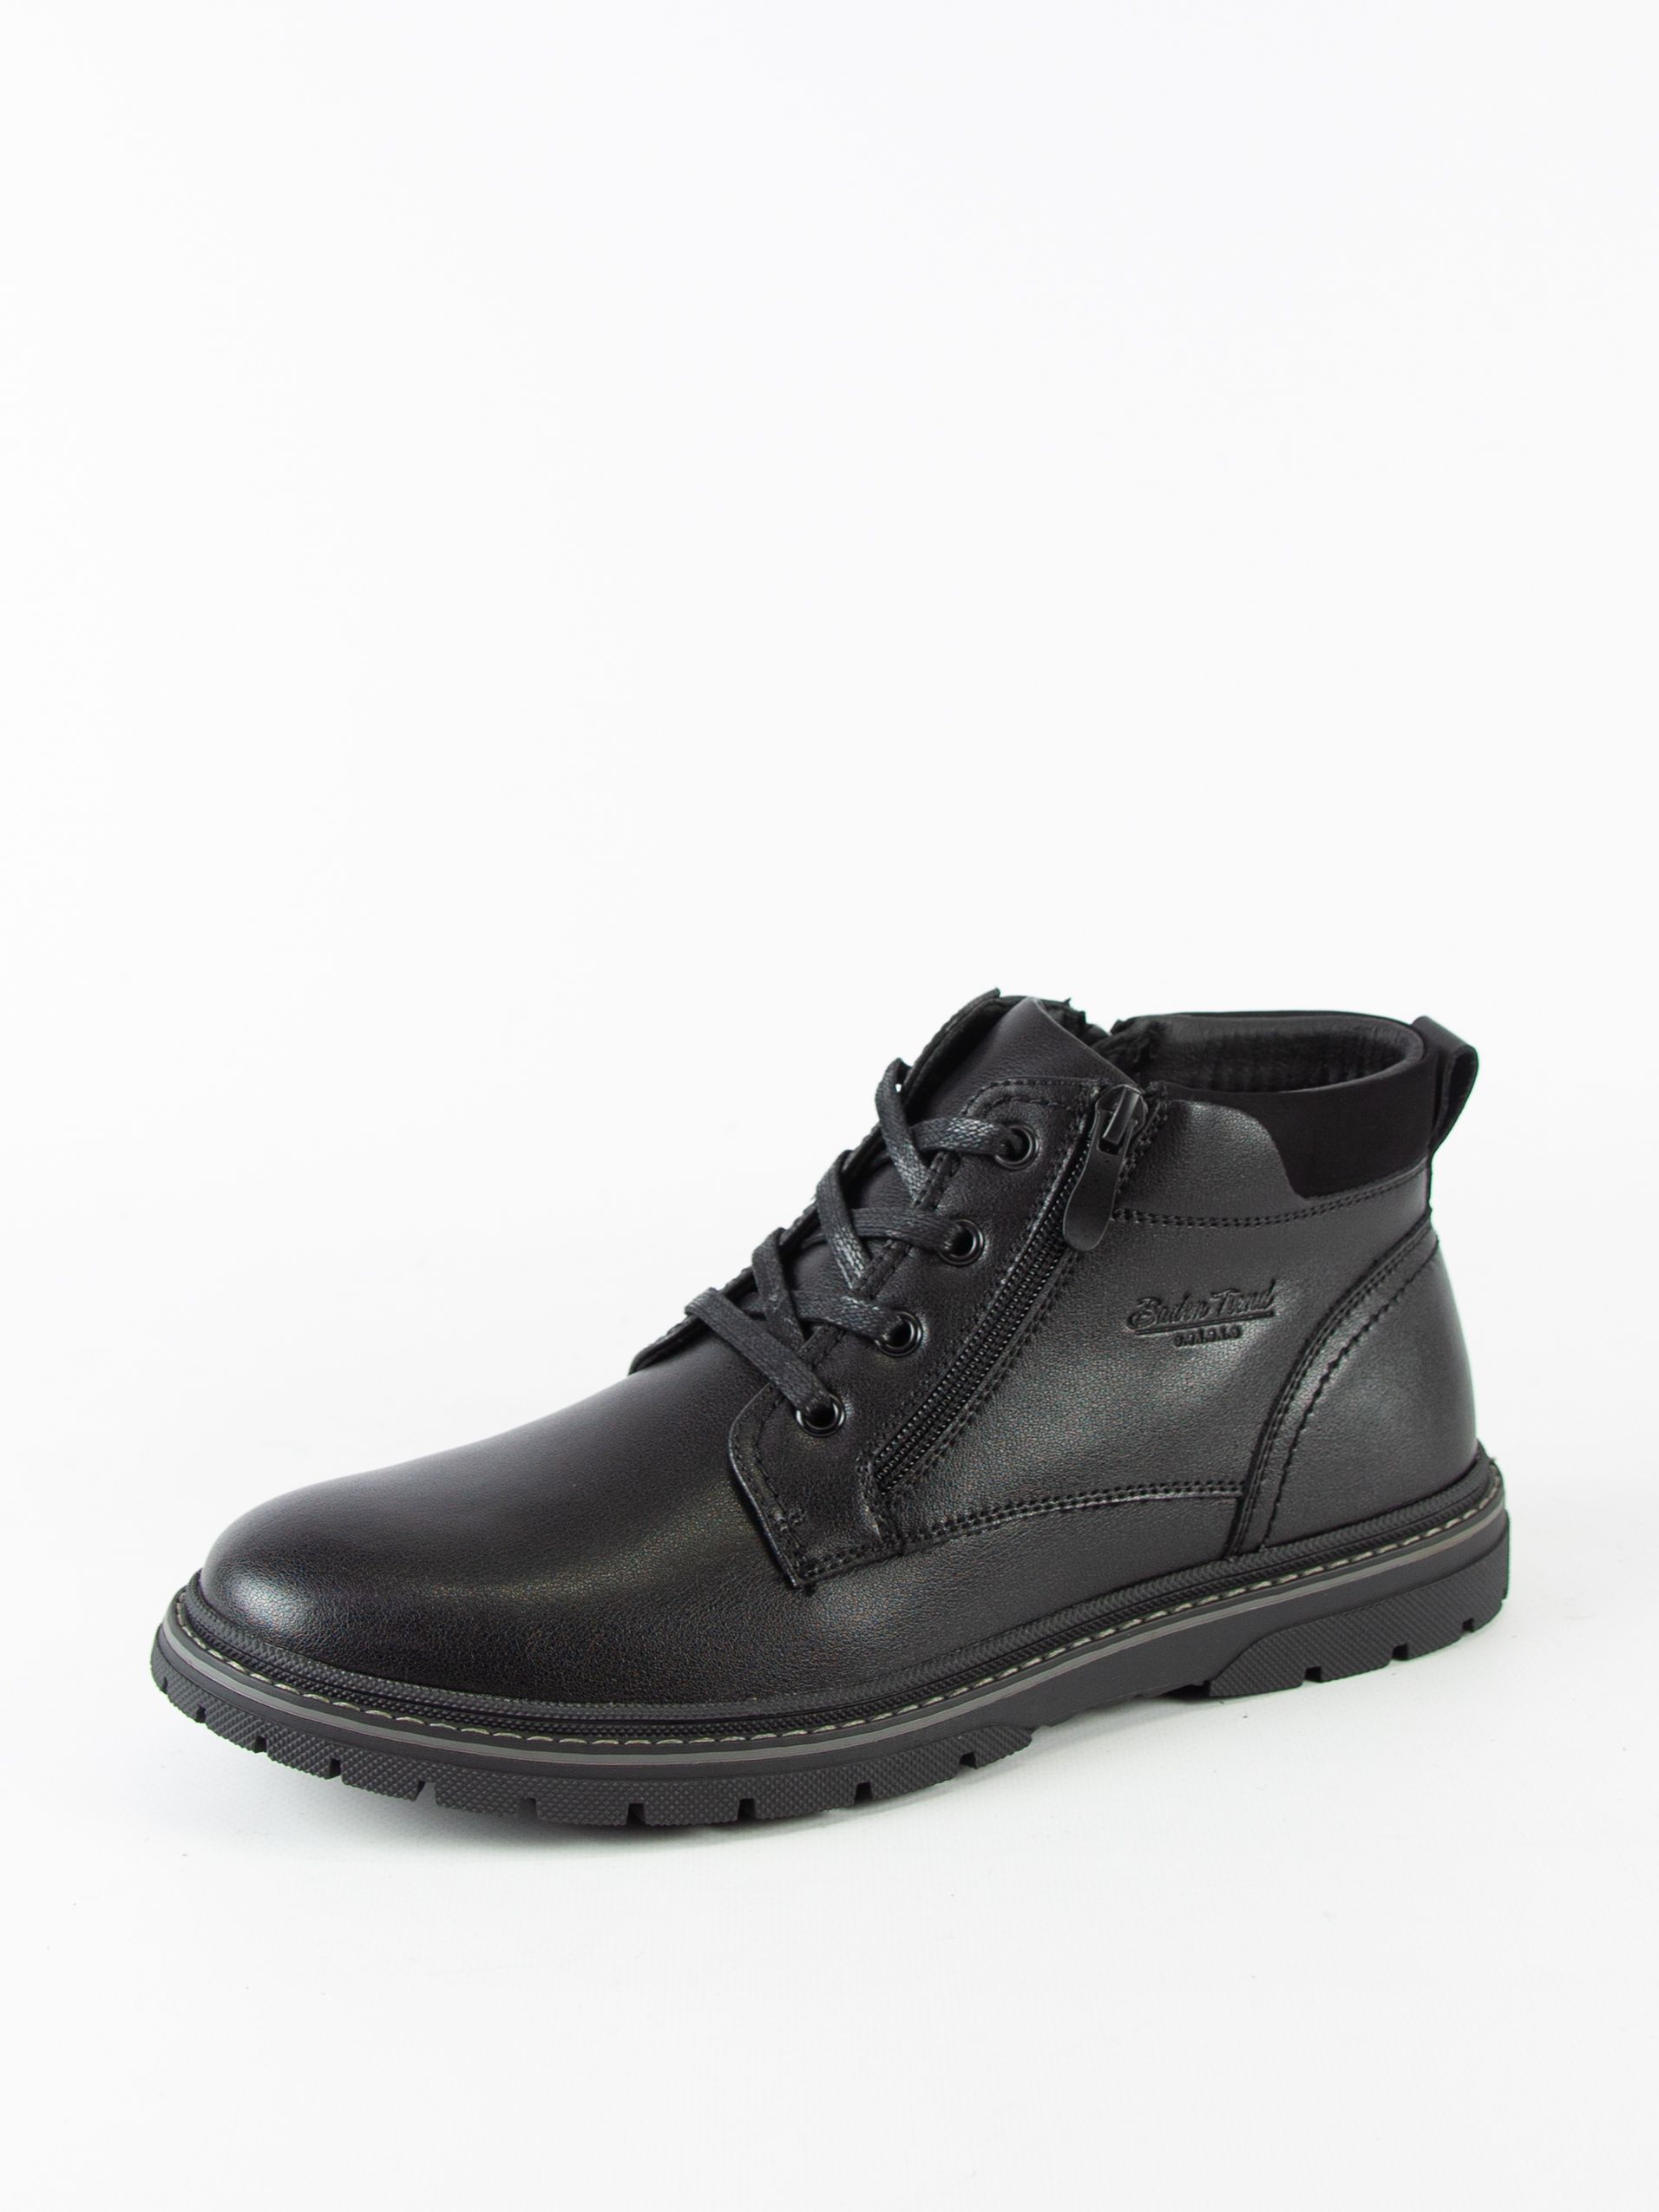 Ботинки мужские Baden LZ139-020 черные 40 RU